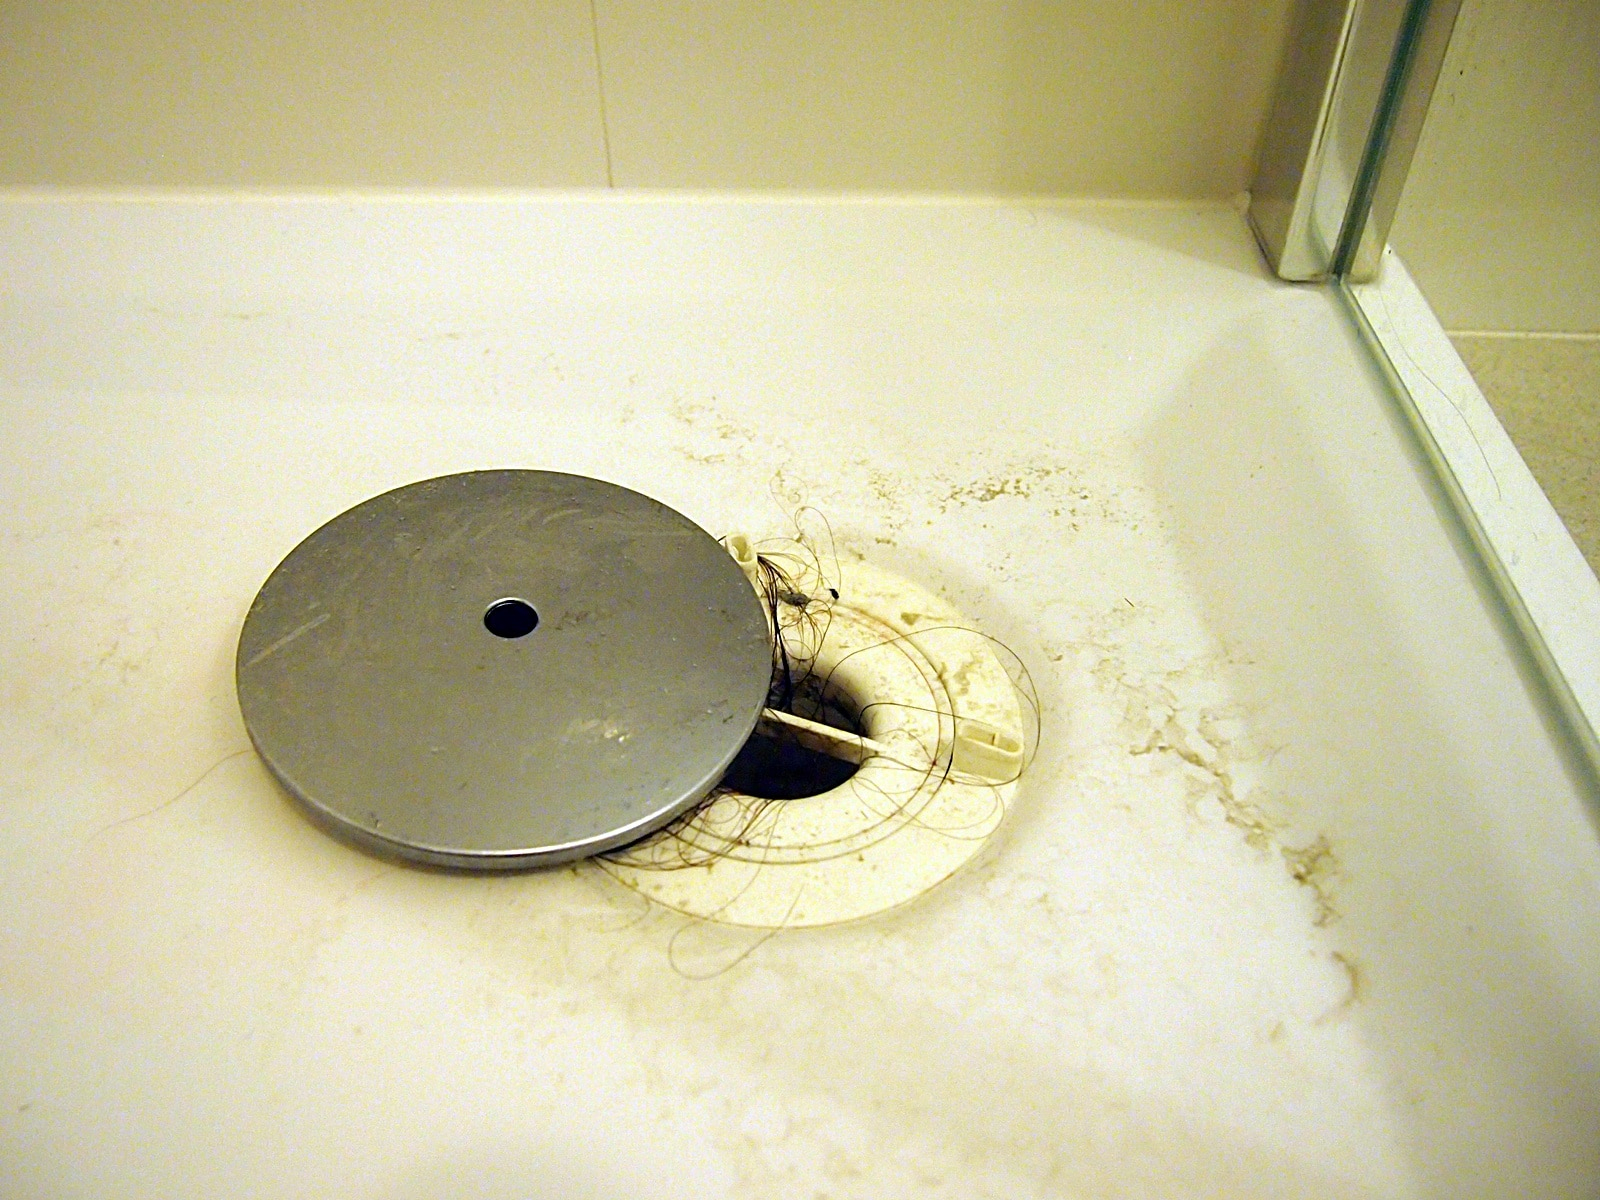 Comment Déboucher Une Douche En 5 Étapes Faciles - Comment ... concernant Mauvaise Odeur Dans La Douche